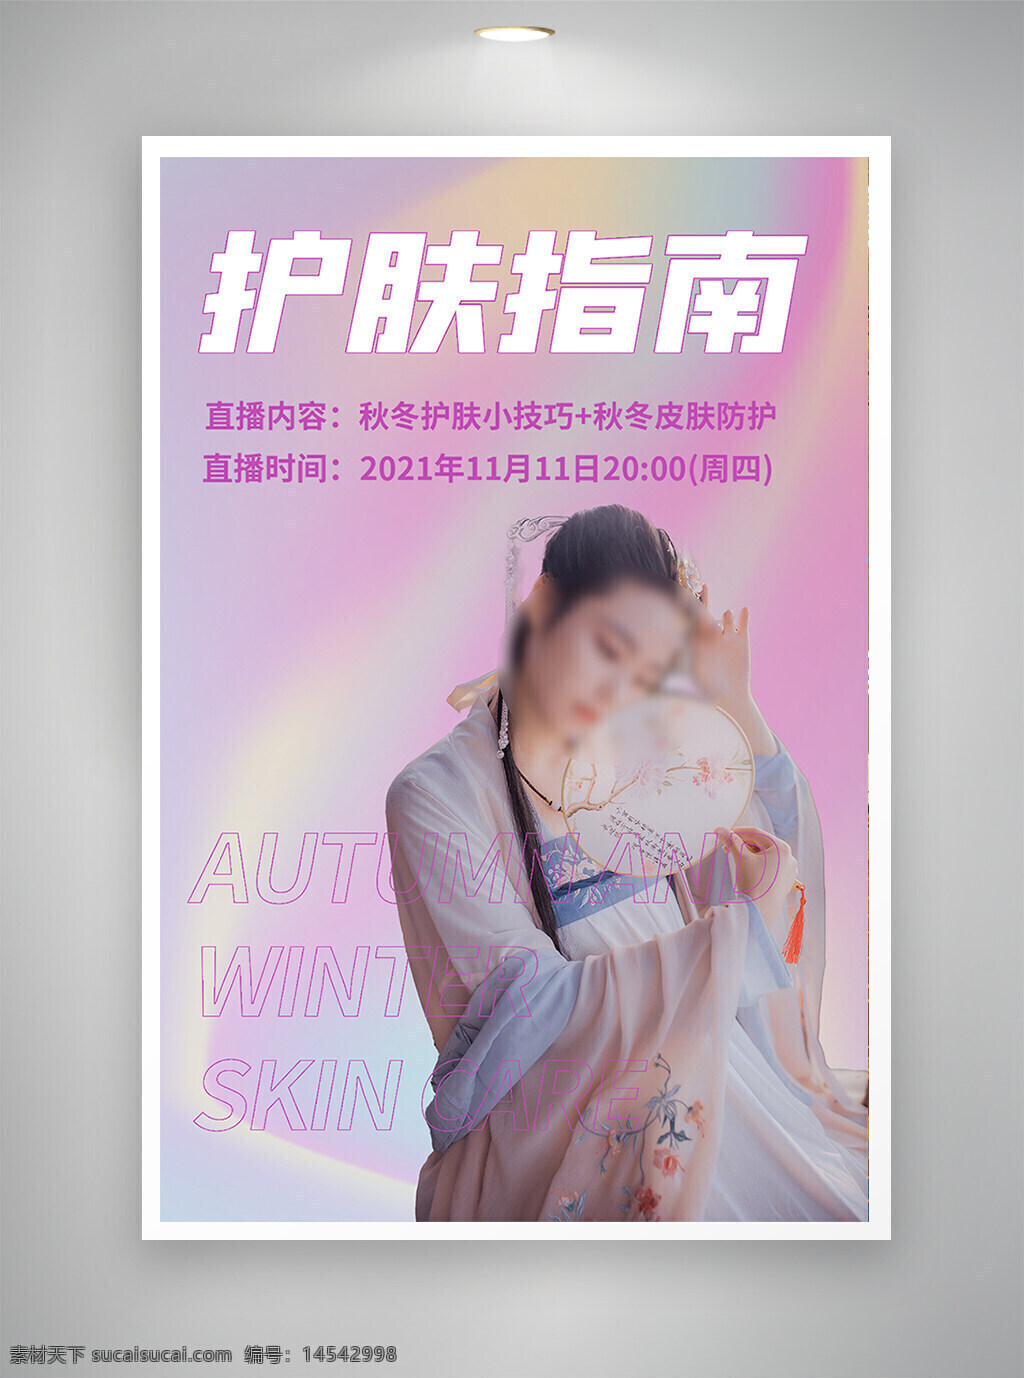 中国风海报 古风海报 节日海报 促销海报 护肤指南